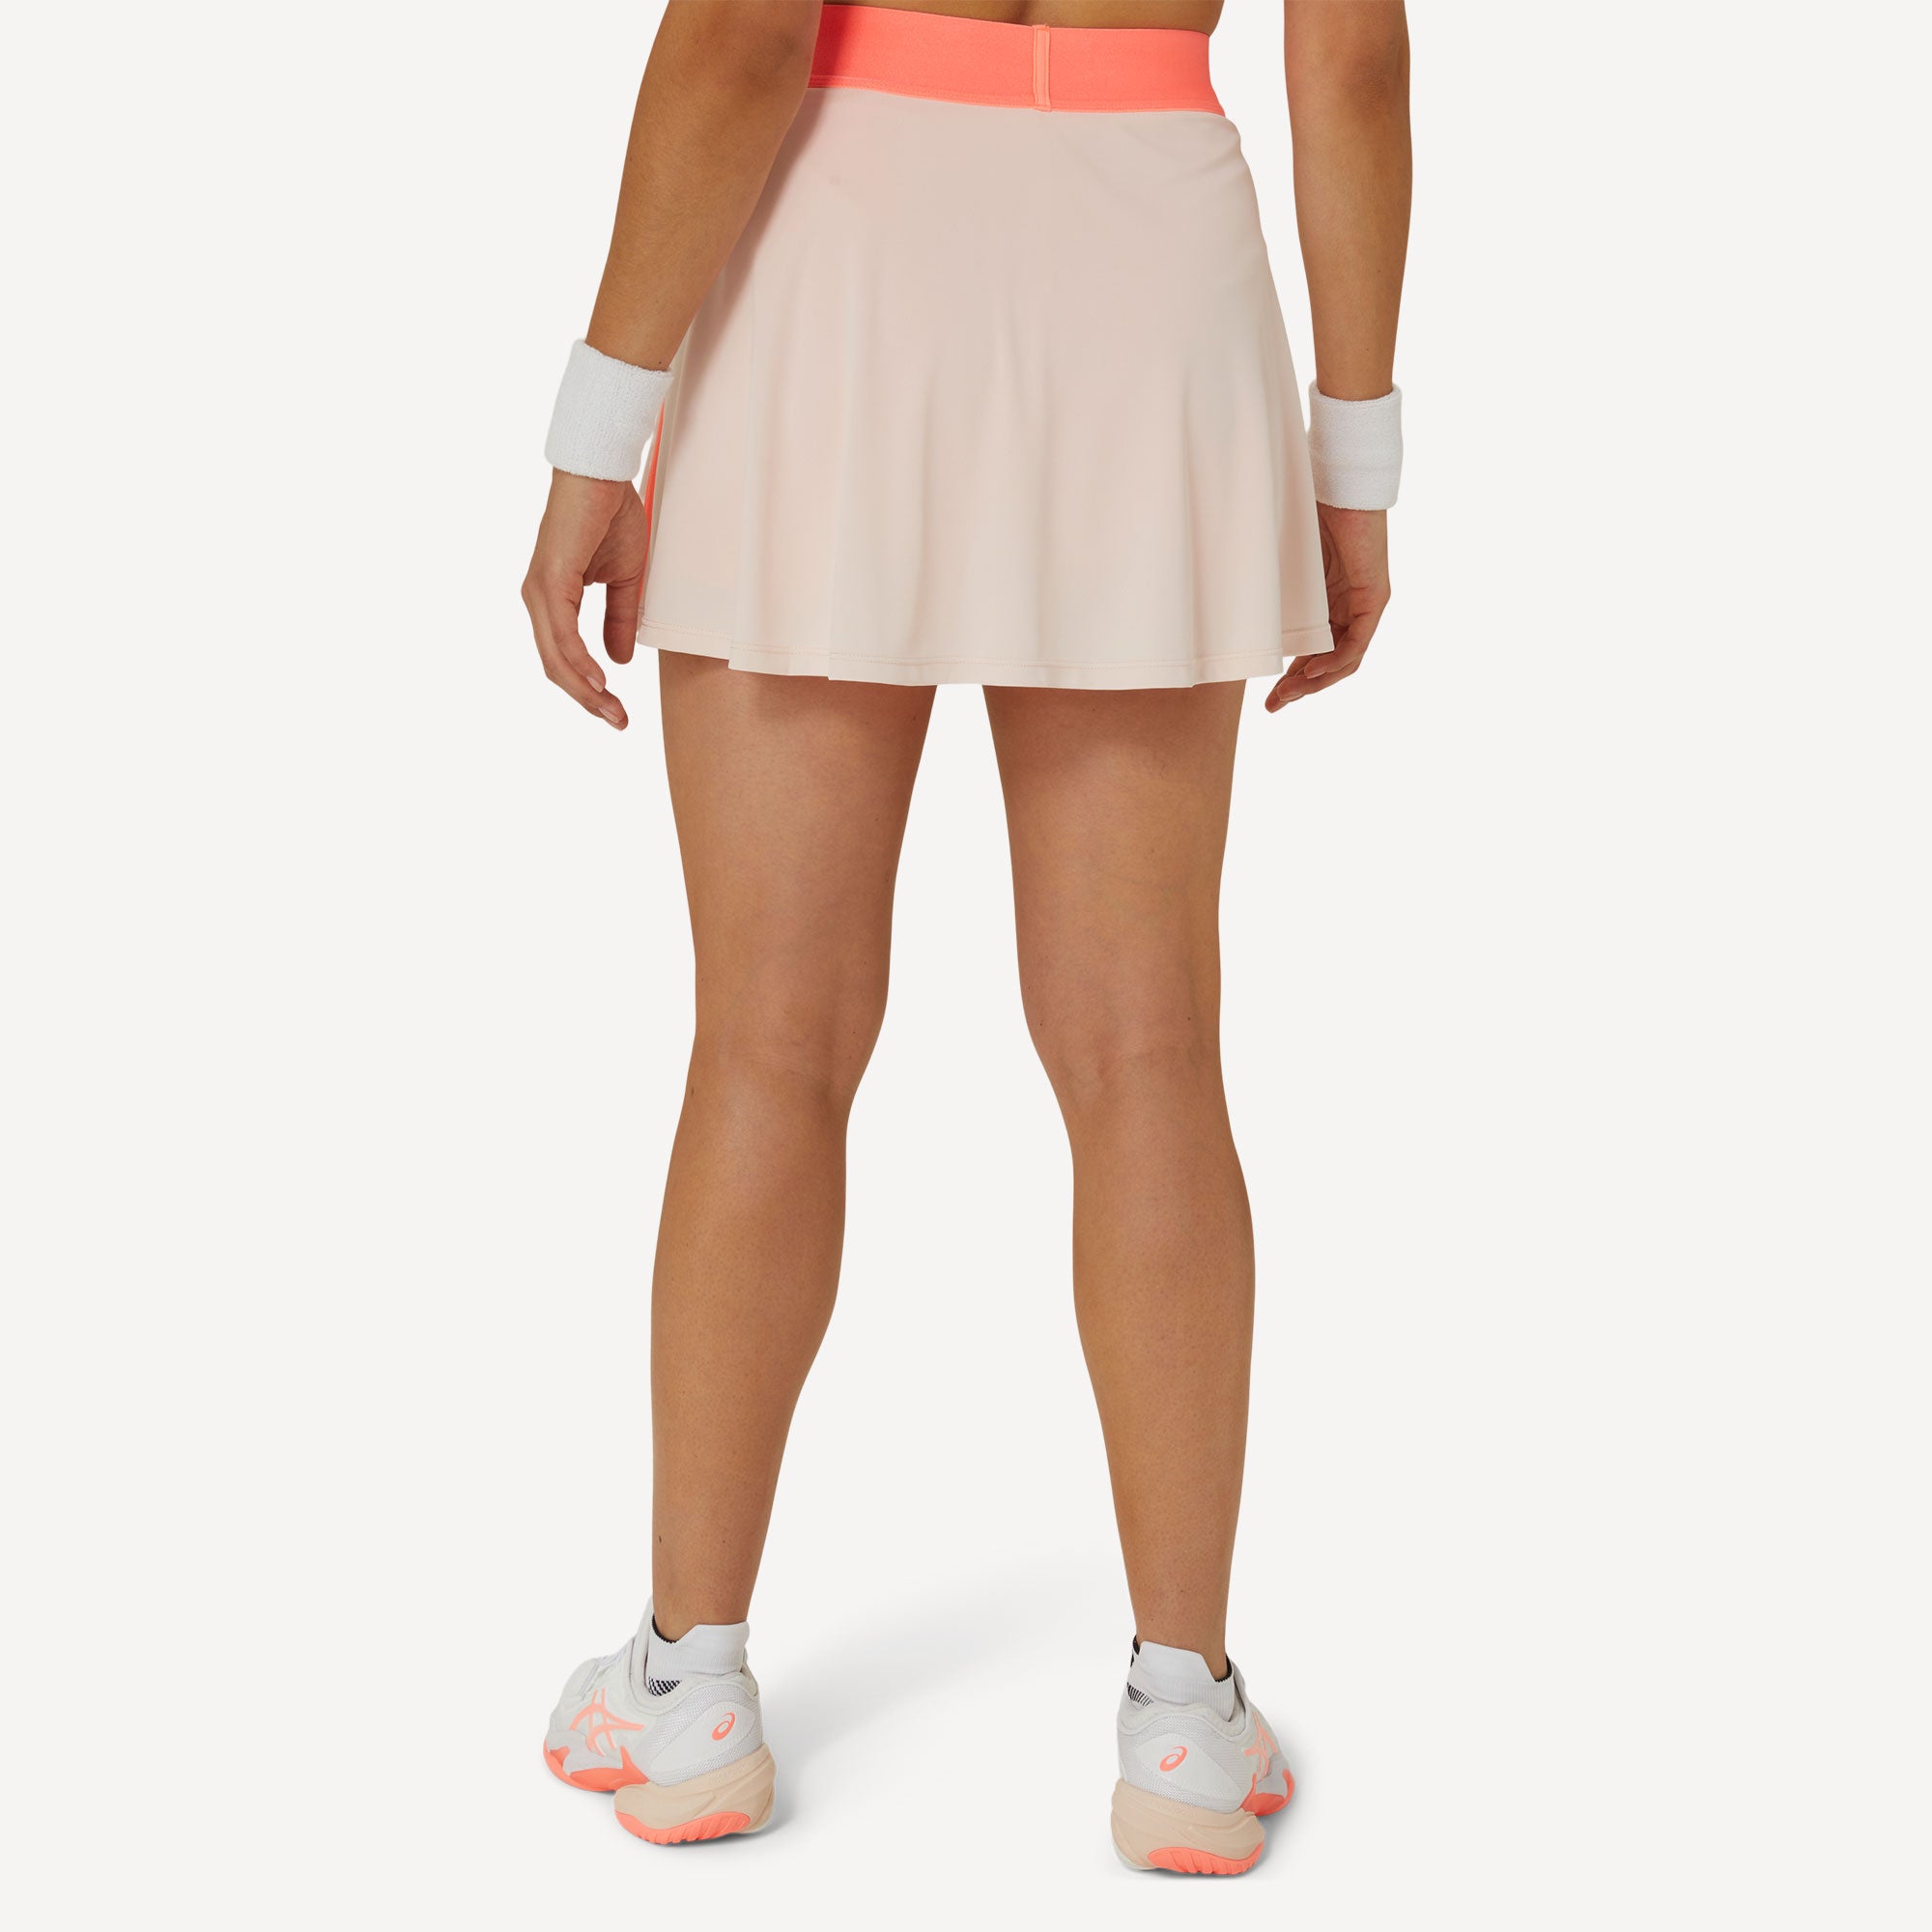 ASICS Match Women's Tennis Skort - Orange (2)